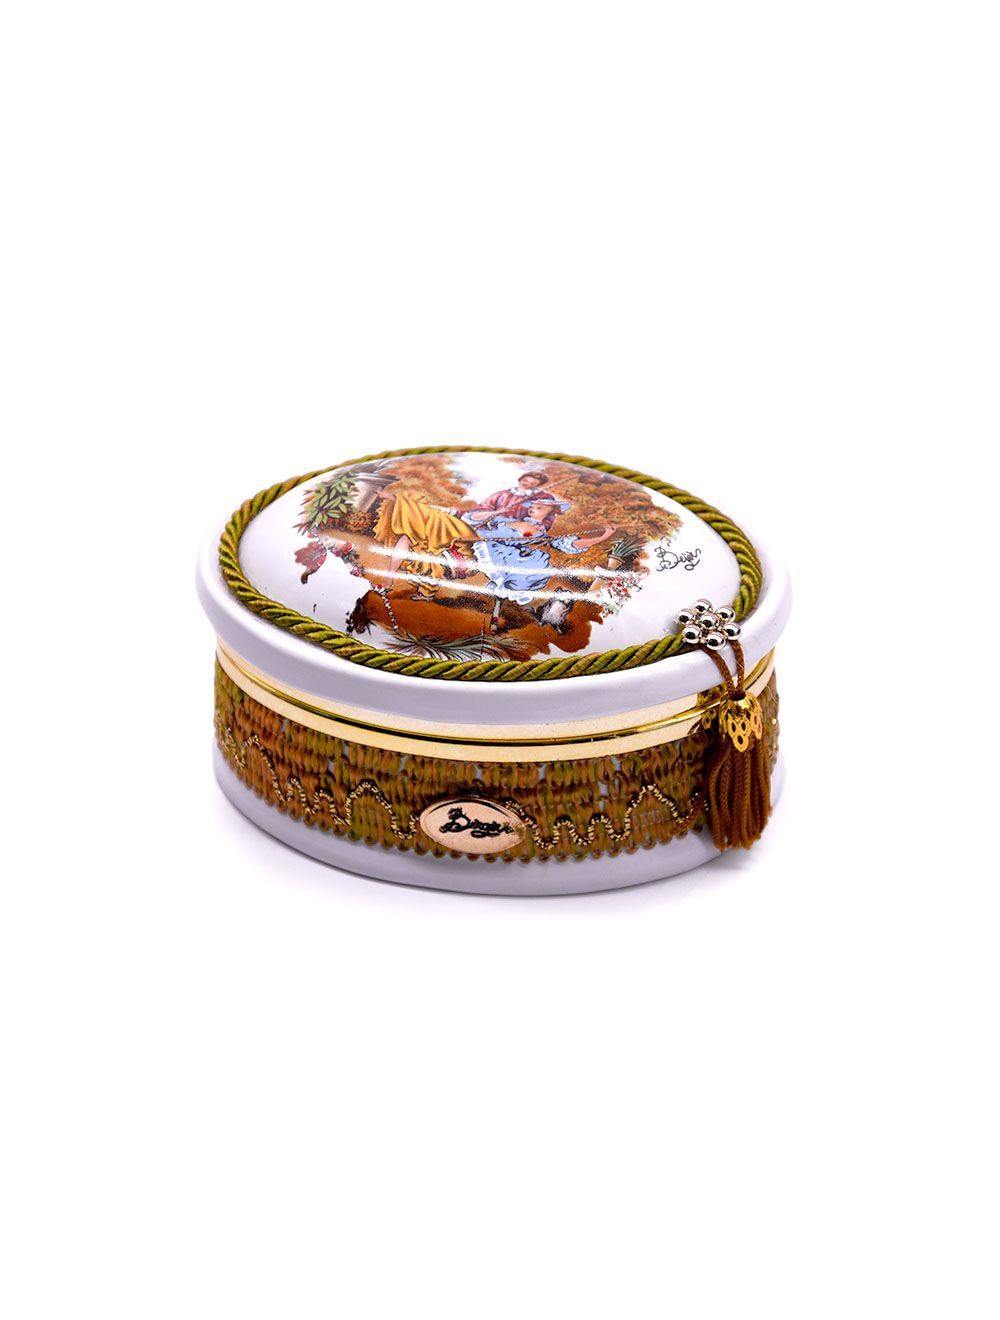 Oval-Shaped Jewellery Box